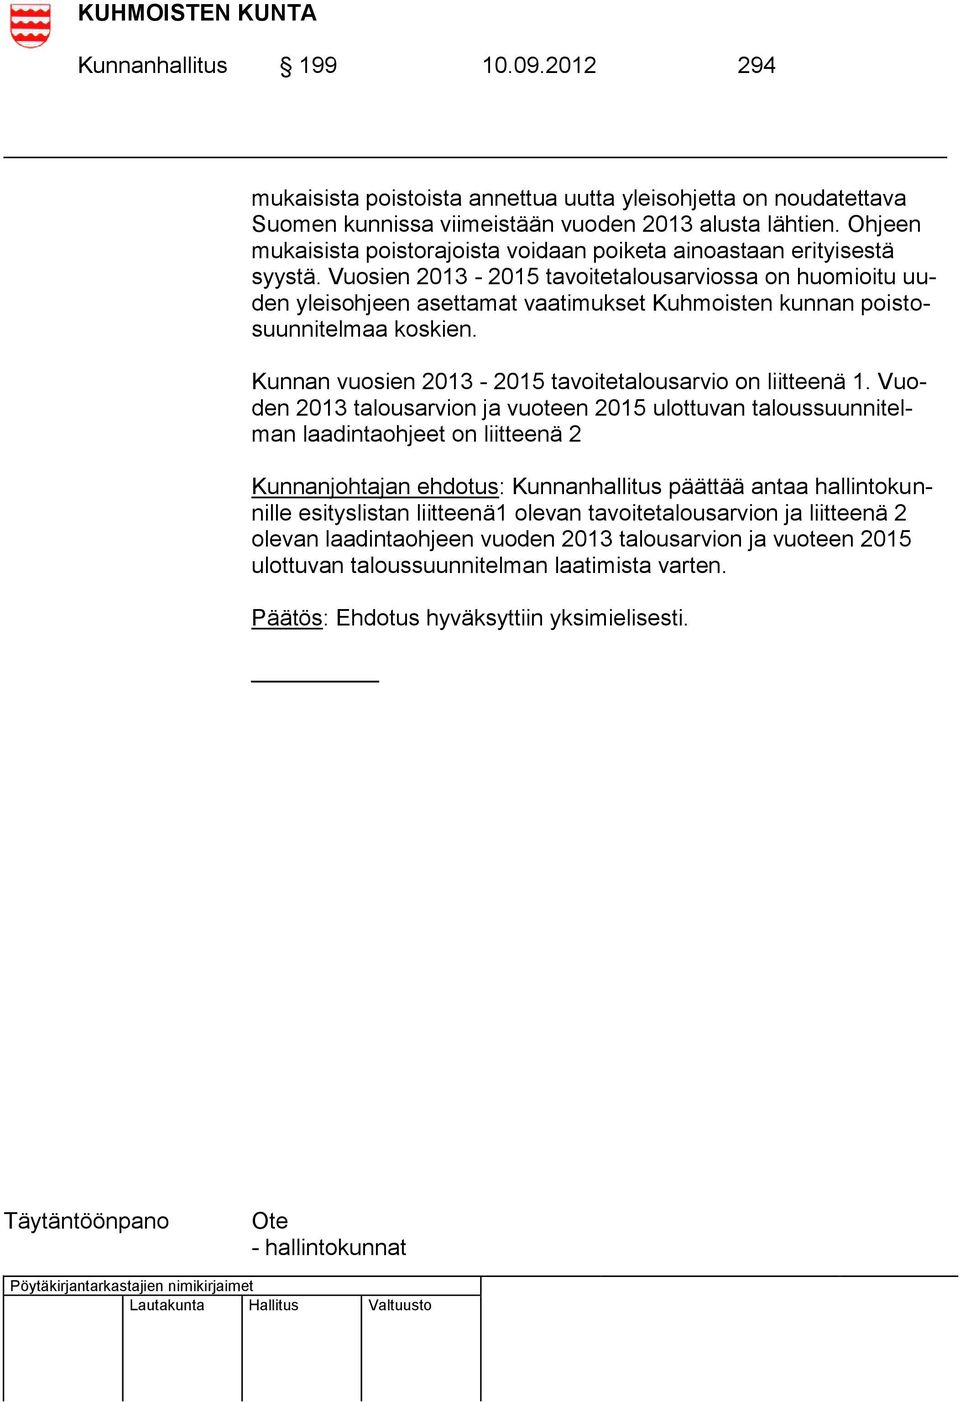 Vuosien 2013-2015 tavoitetalousarviossa on huomioitu uuden yleisohjeen asettamat vaatimukset Kuhmoisten kunnan poistosuunnitelmaa koskien. Kunnan vuosien 2013-2015 tavoitetalousarvio on liitteenä 1.